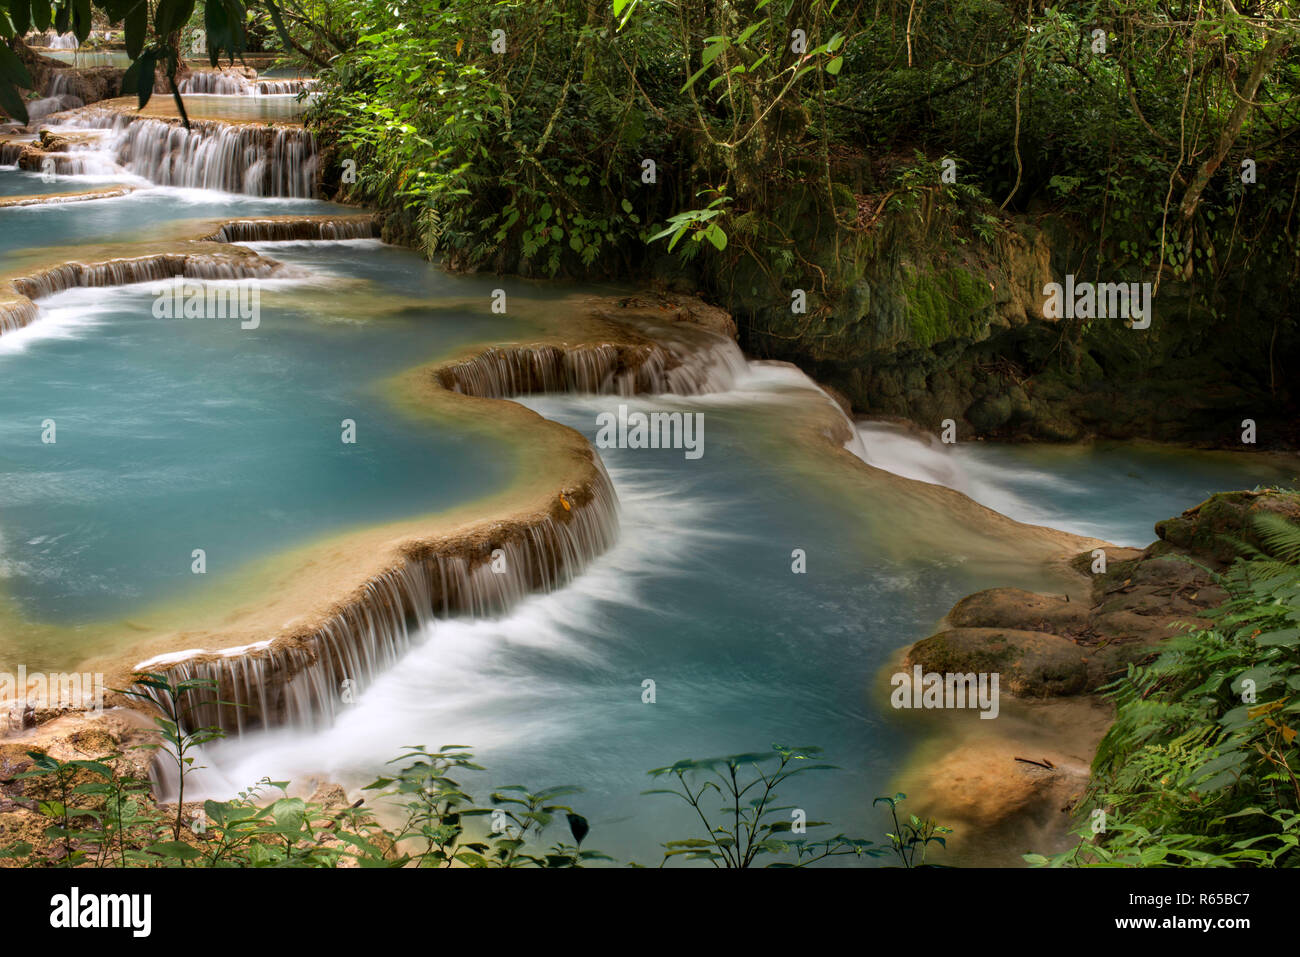 Waterfalls at the Tat Kuang near Luang Prabang in Laos. Stock Photo